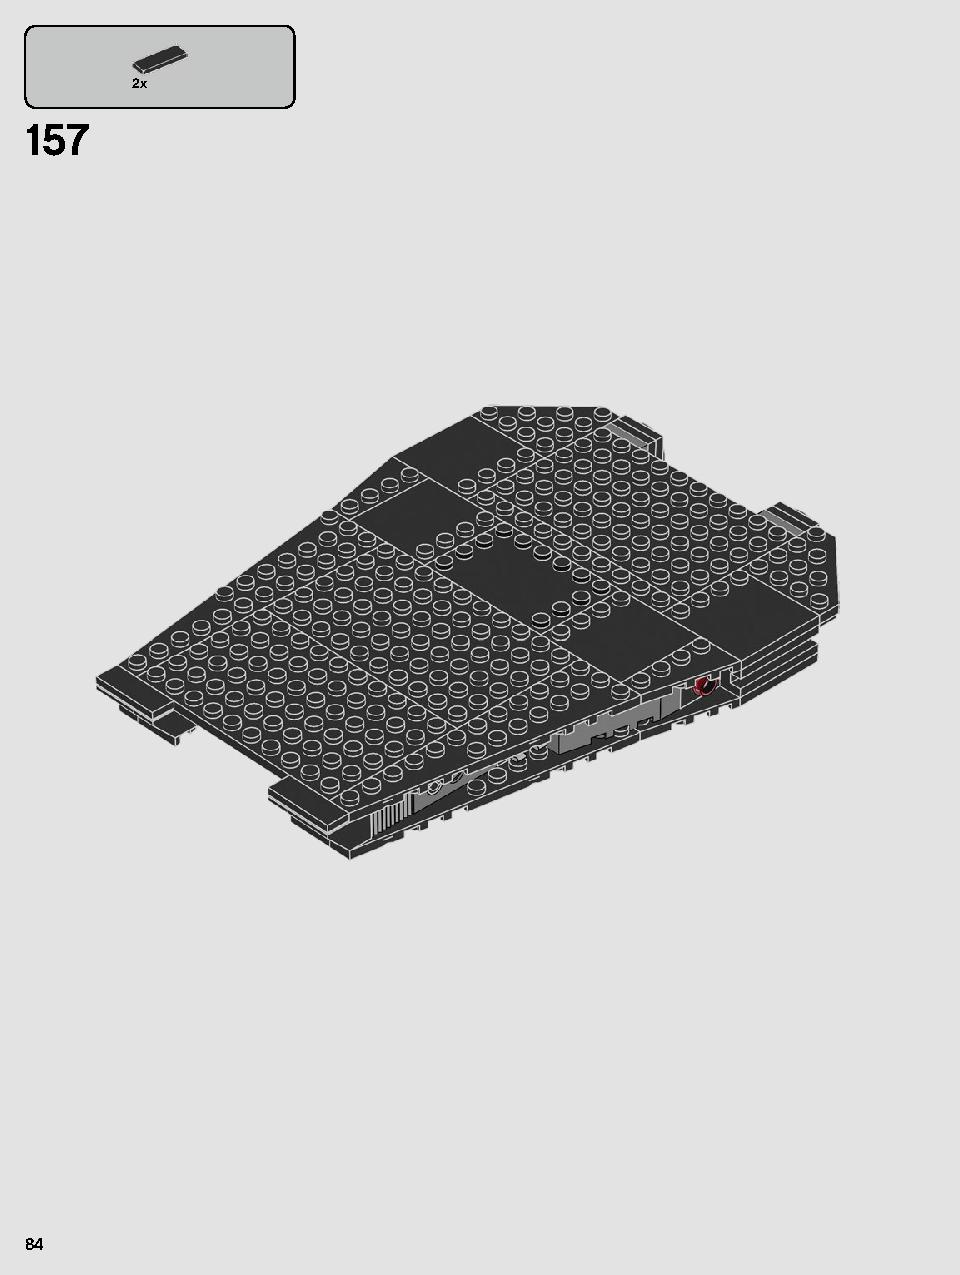 스타워즈 카일로 렌의 셔틀™ 75256 레고 세트 제품정보 레고 조립설명서 84 page